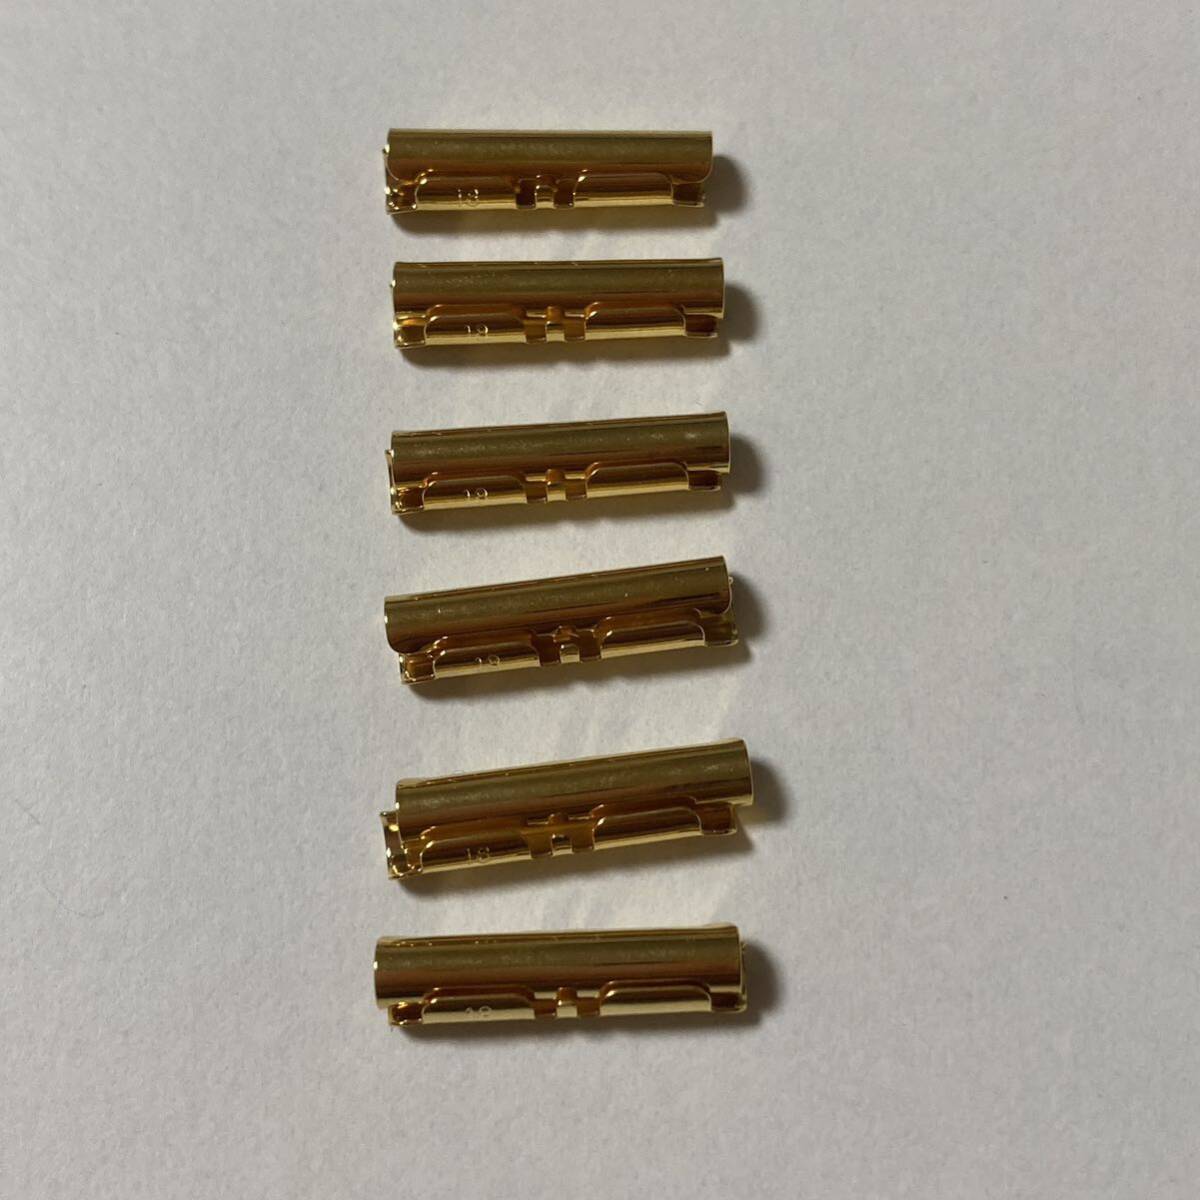  Fit труба end деталь прямой can золотой цвет 18mm 6 пара (1 2 шт )